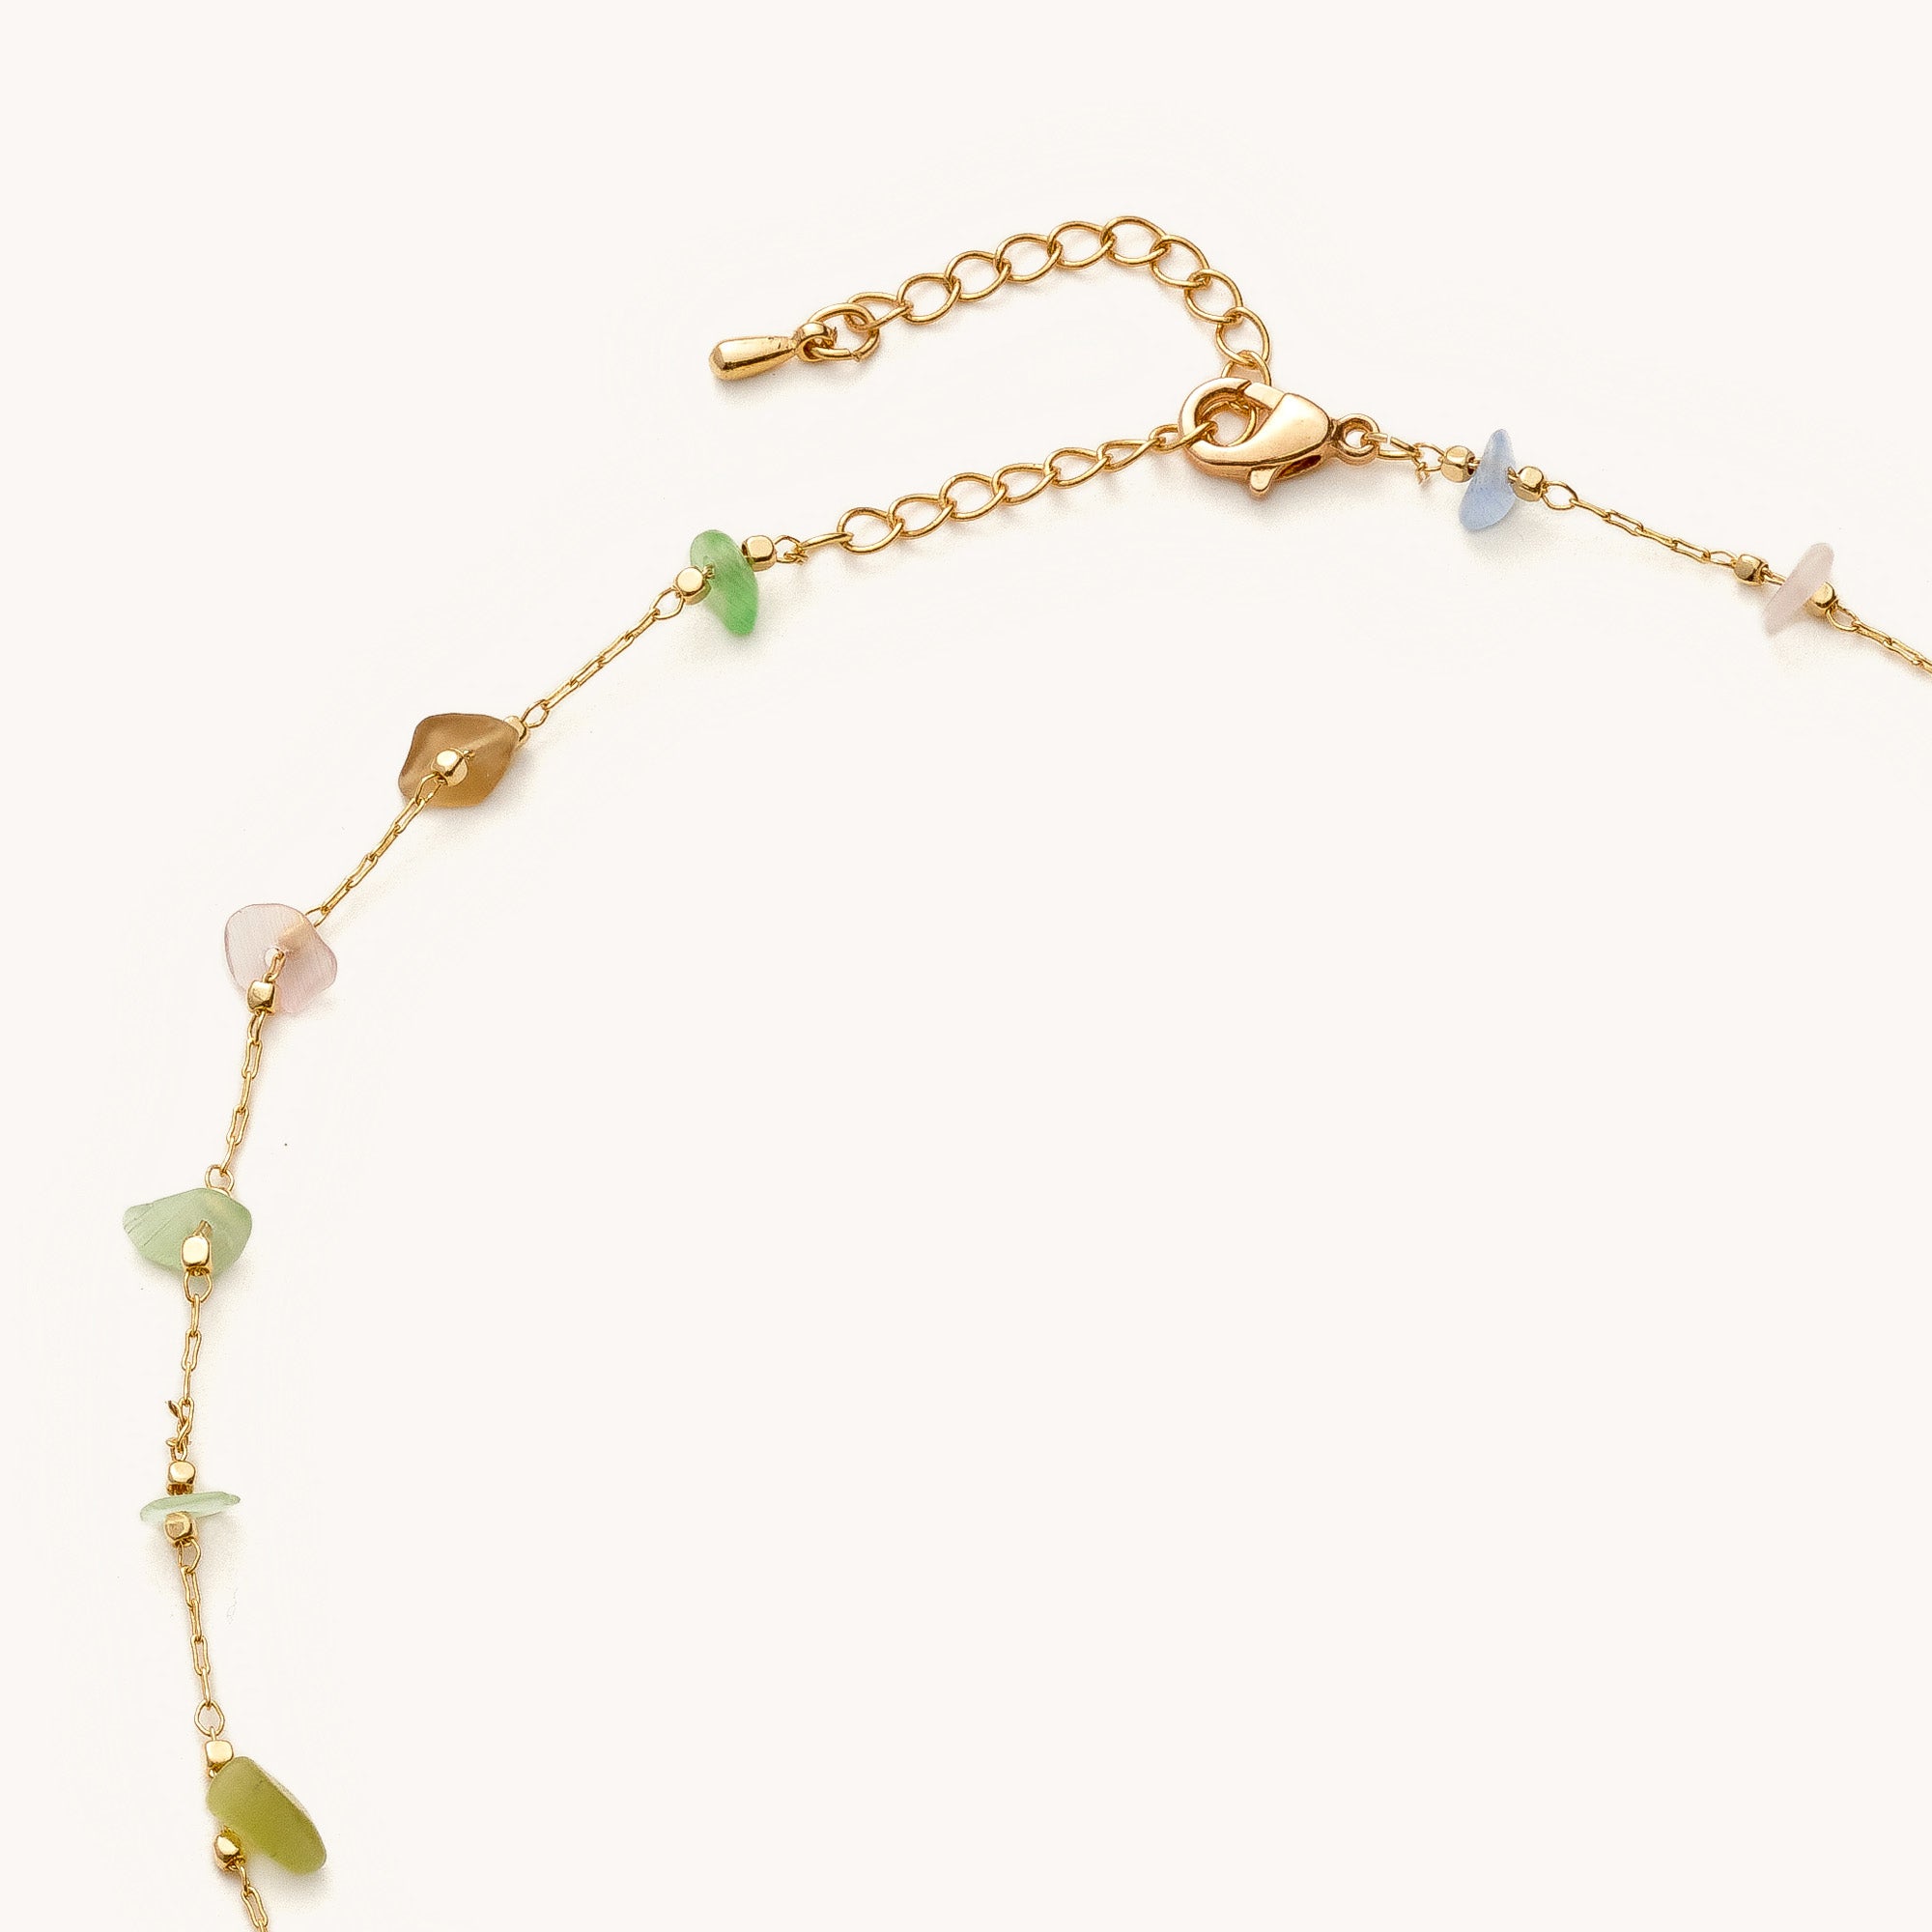 Shabella Necklaces Cold Multi-Colored stone Necklace